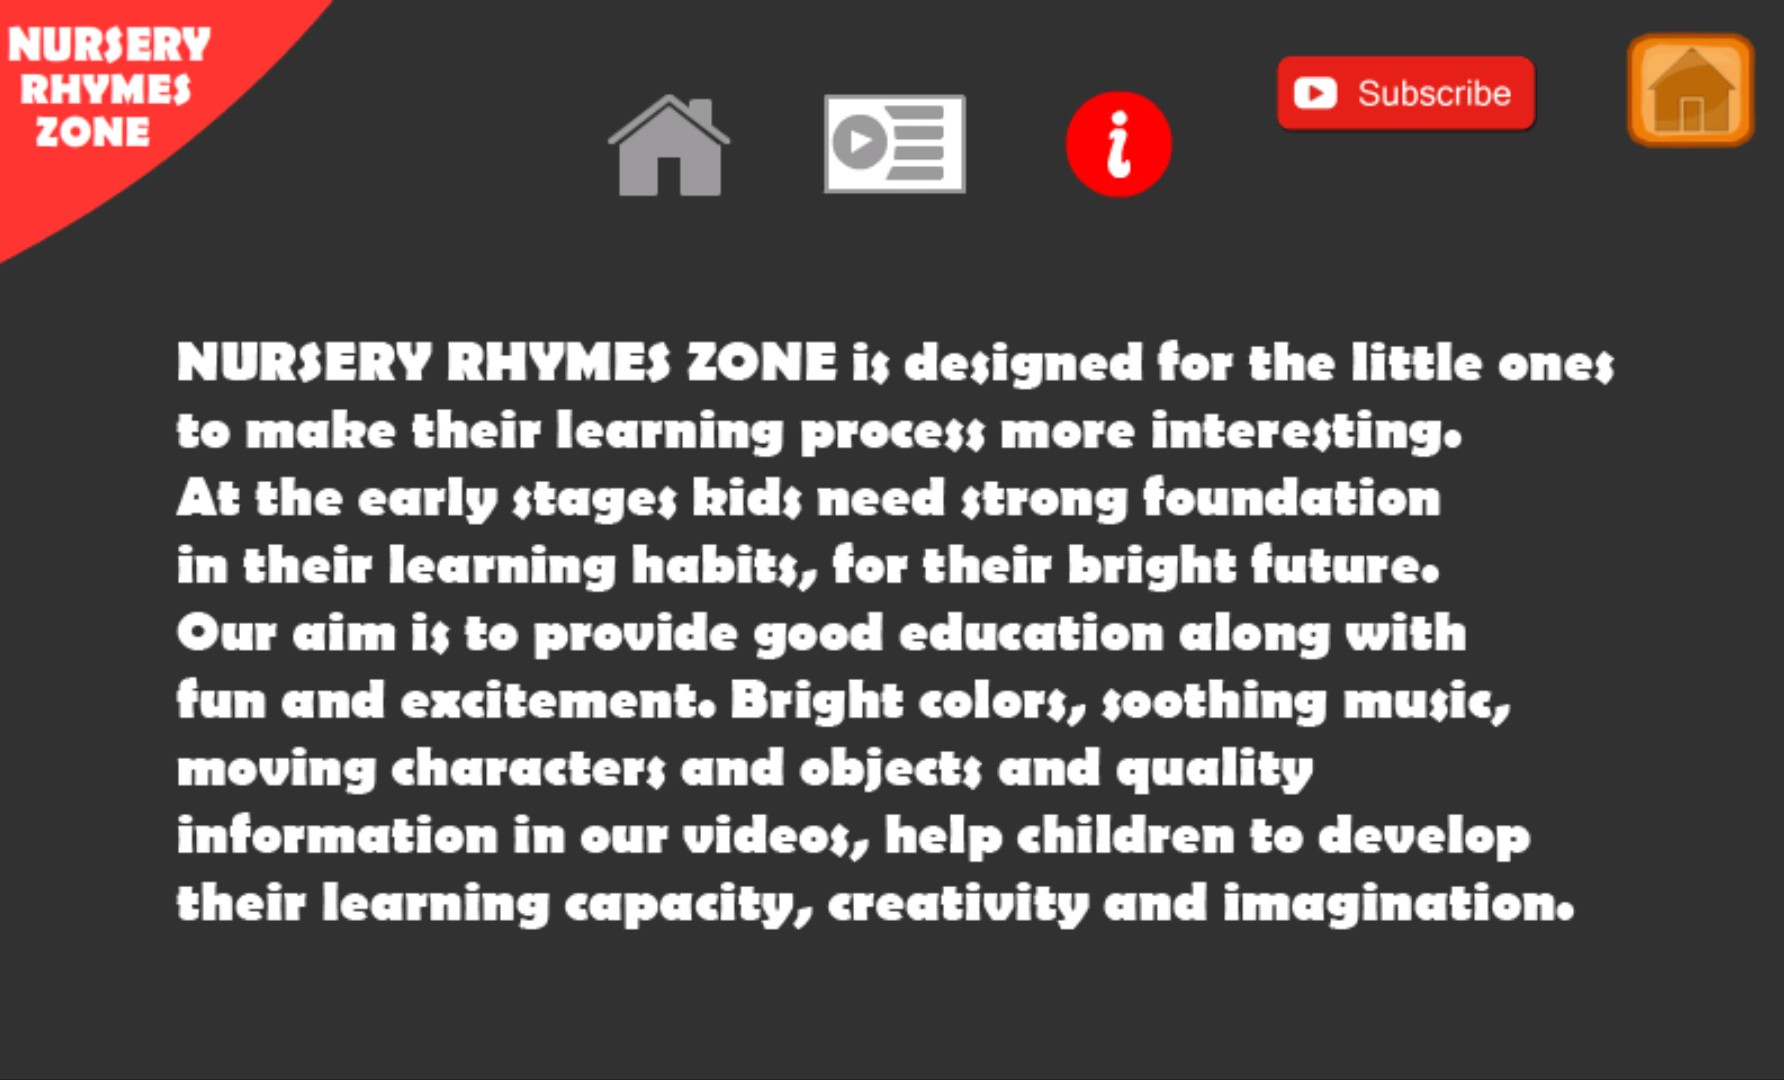 Nursery Rhymes Zone-KidsRhymes